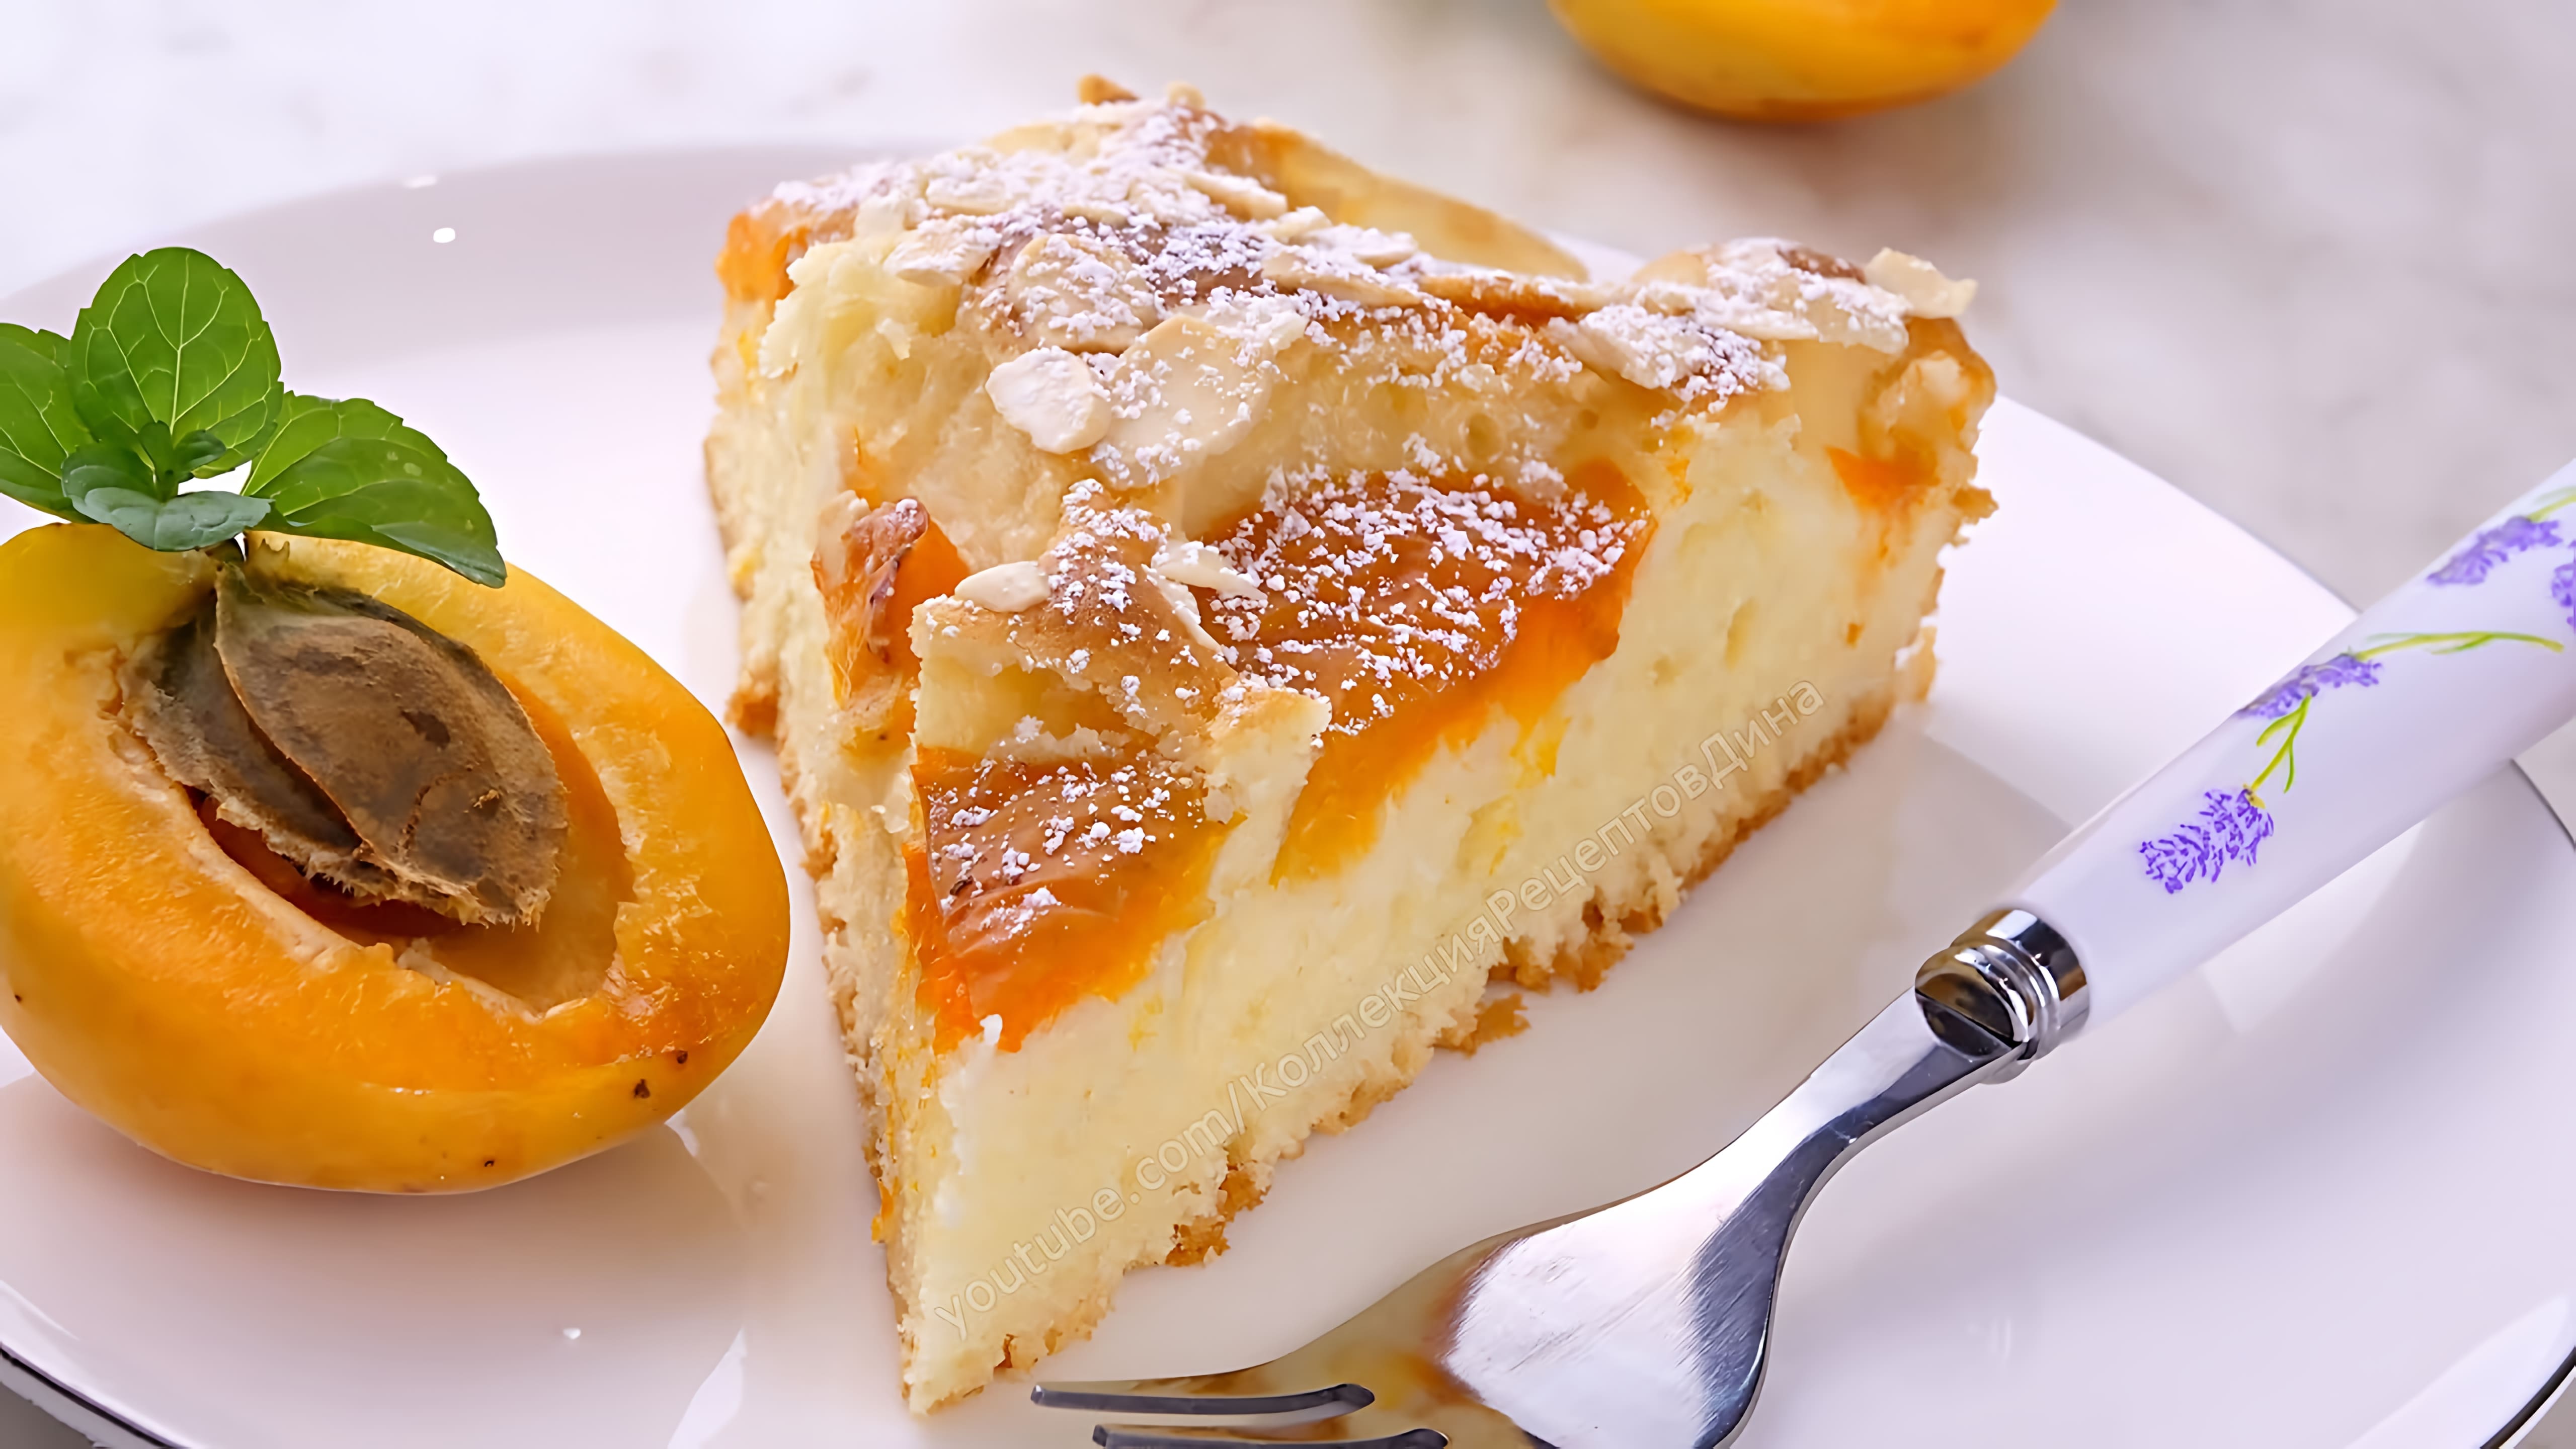 Видео: Быстрый и вкусный пирог с абрикосами и миндалем! Тесто за 5 минут + выпечка! Самый простой рецепт!